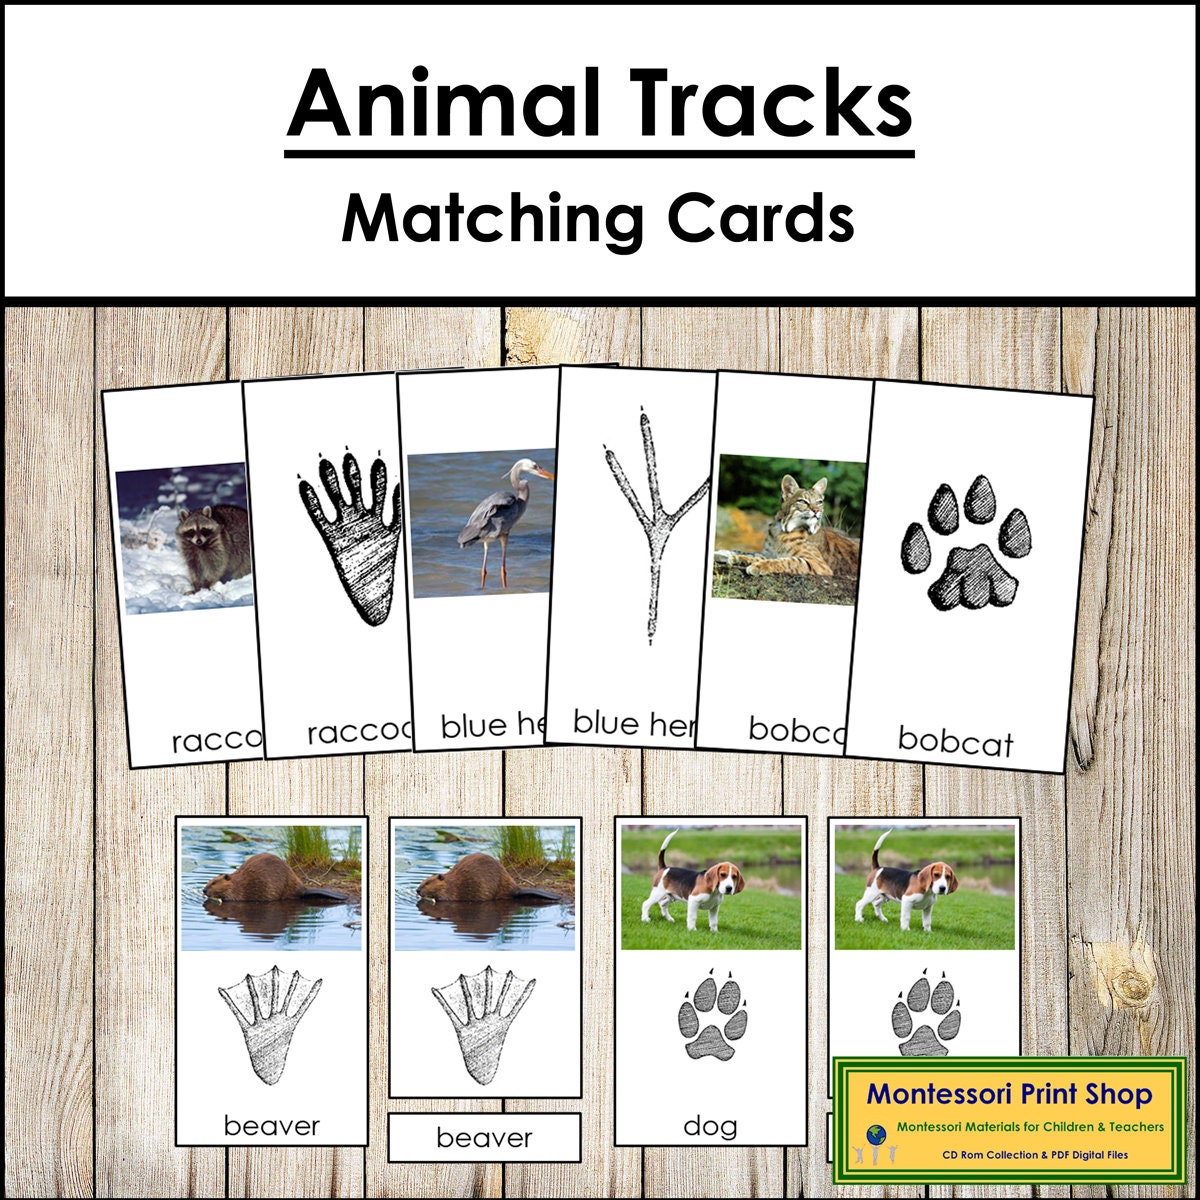 Animal Tracks Print Animal Tracks of the Woodland Printable Animal